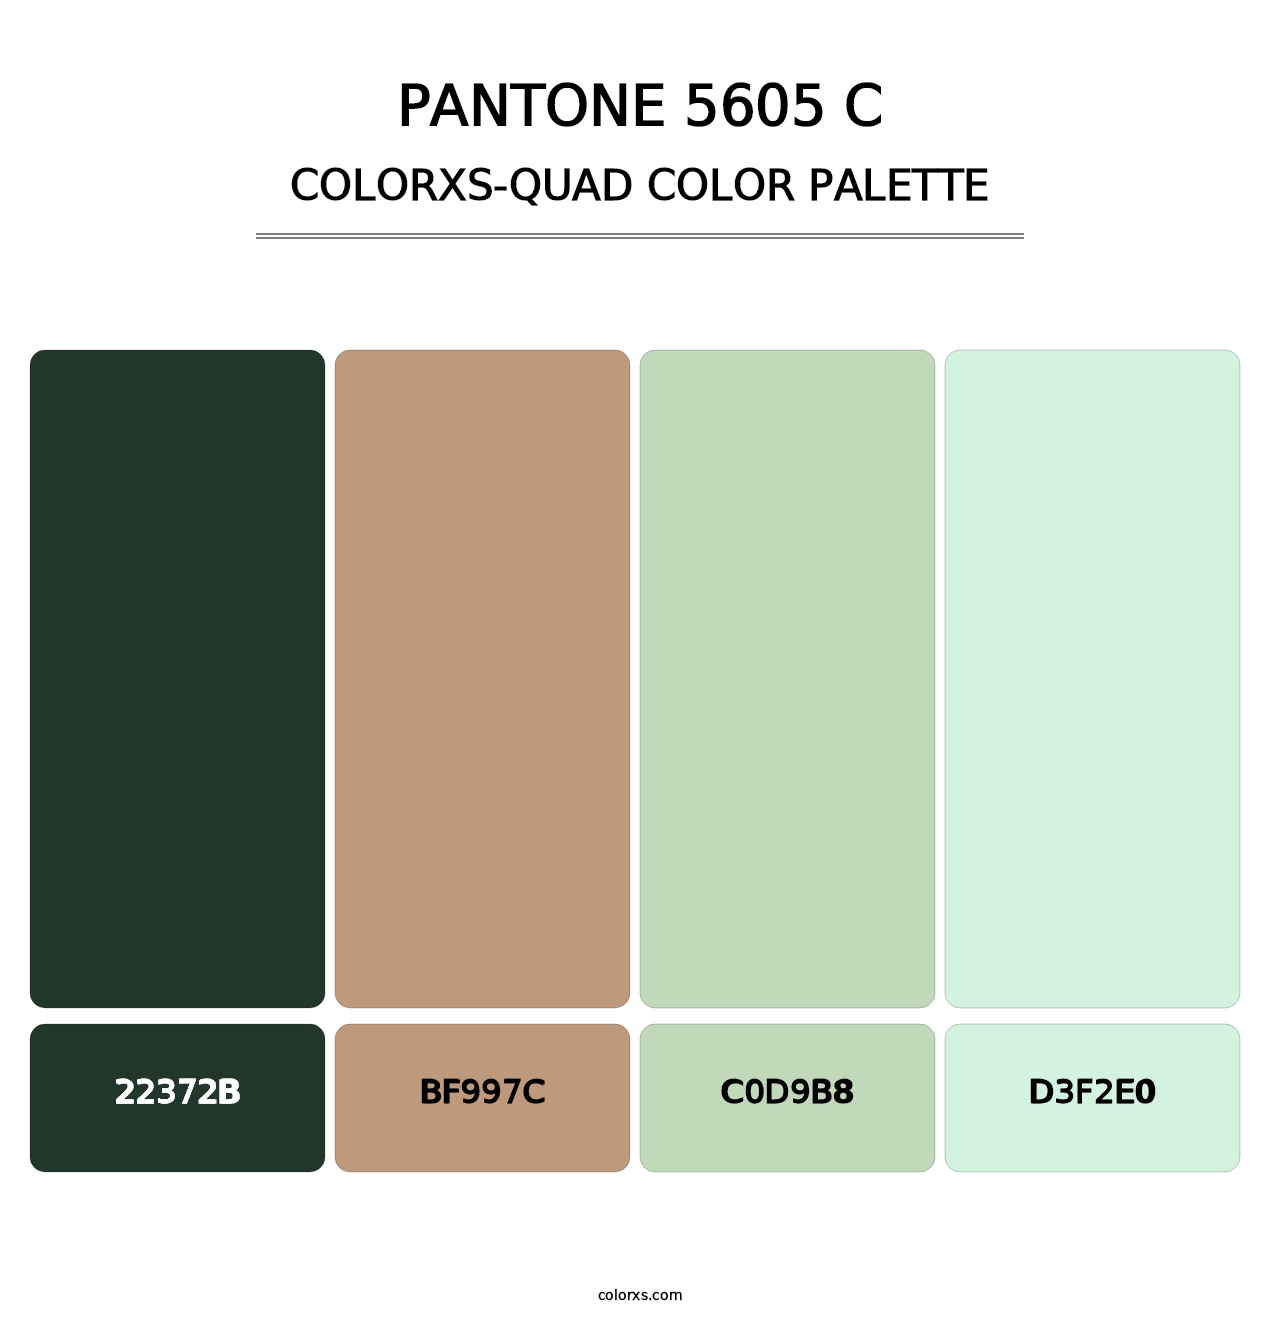 PANTONE 5605 C - Colorxs Quad Palette